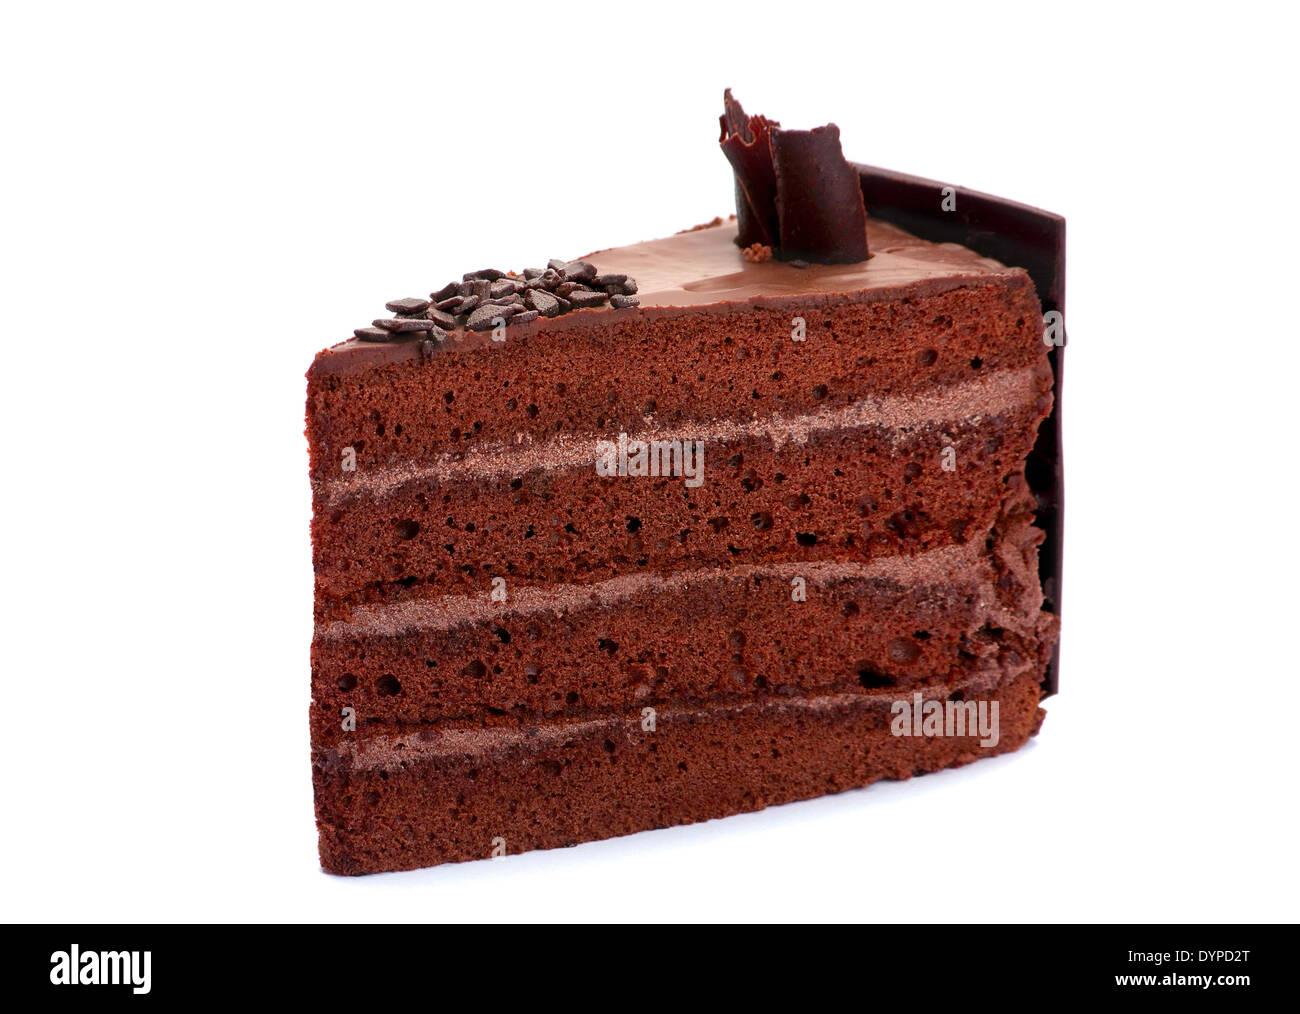 Tranche de gâteau au chocolat Banque D'Images